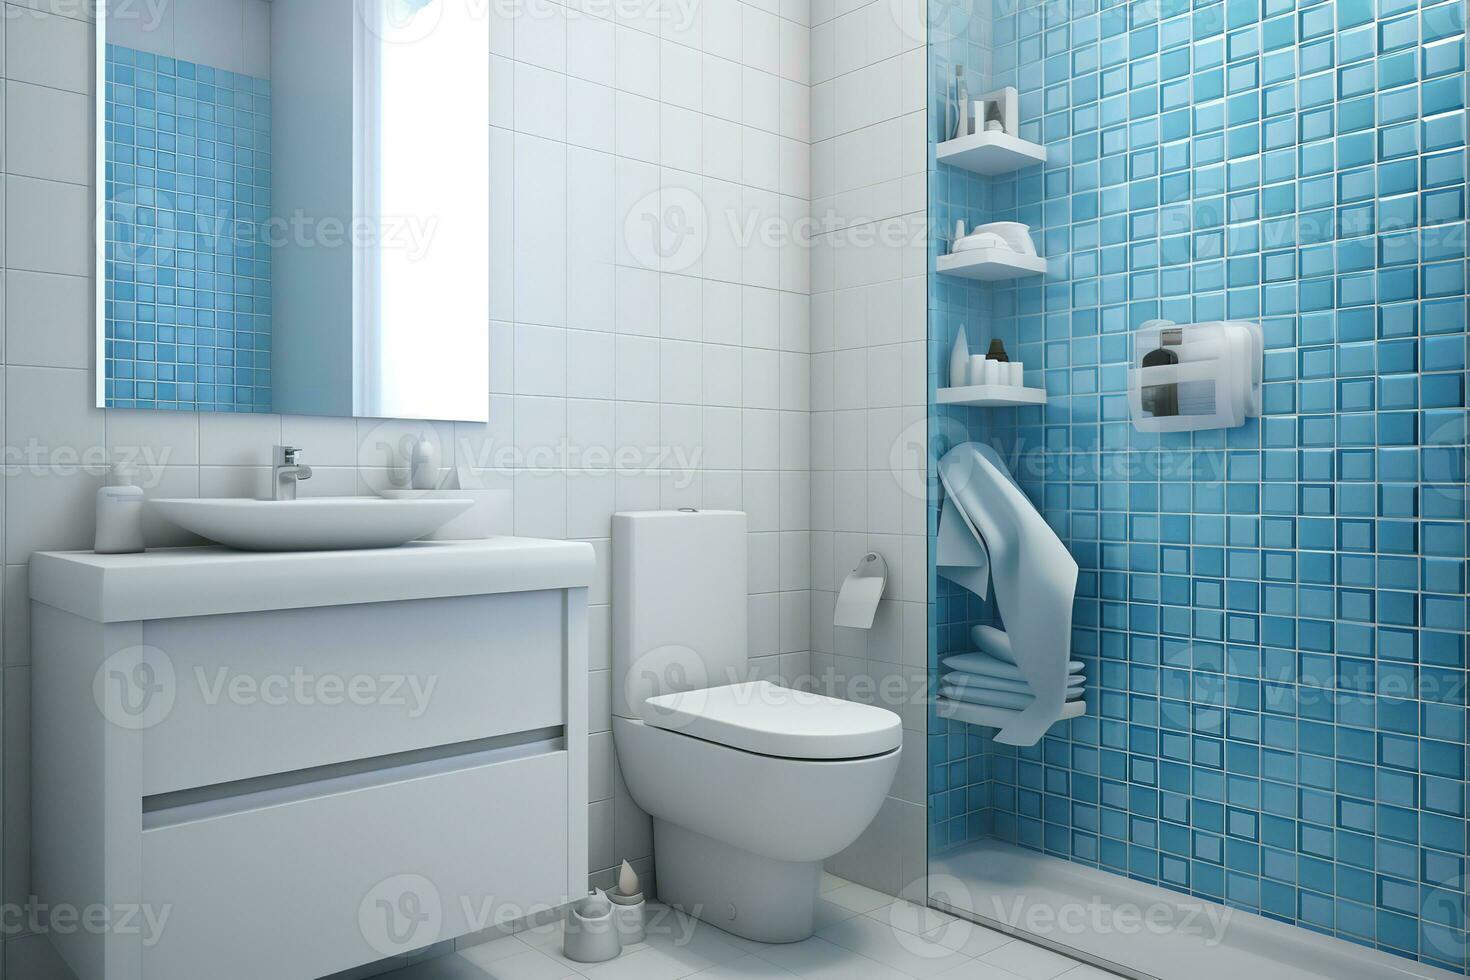 nettoyer et rangé salle de bains avec couler, toilettes, et douche, bleu carrelage ajouter une pop de couleur. moderne salle de bains conception avec simple, élégant agencements. photo